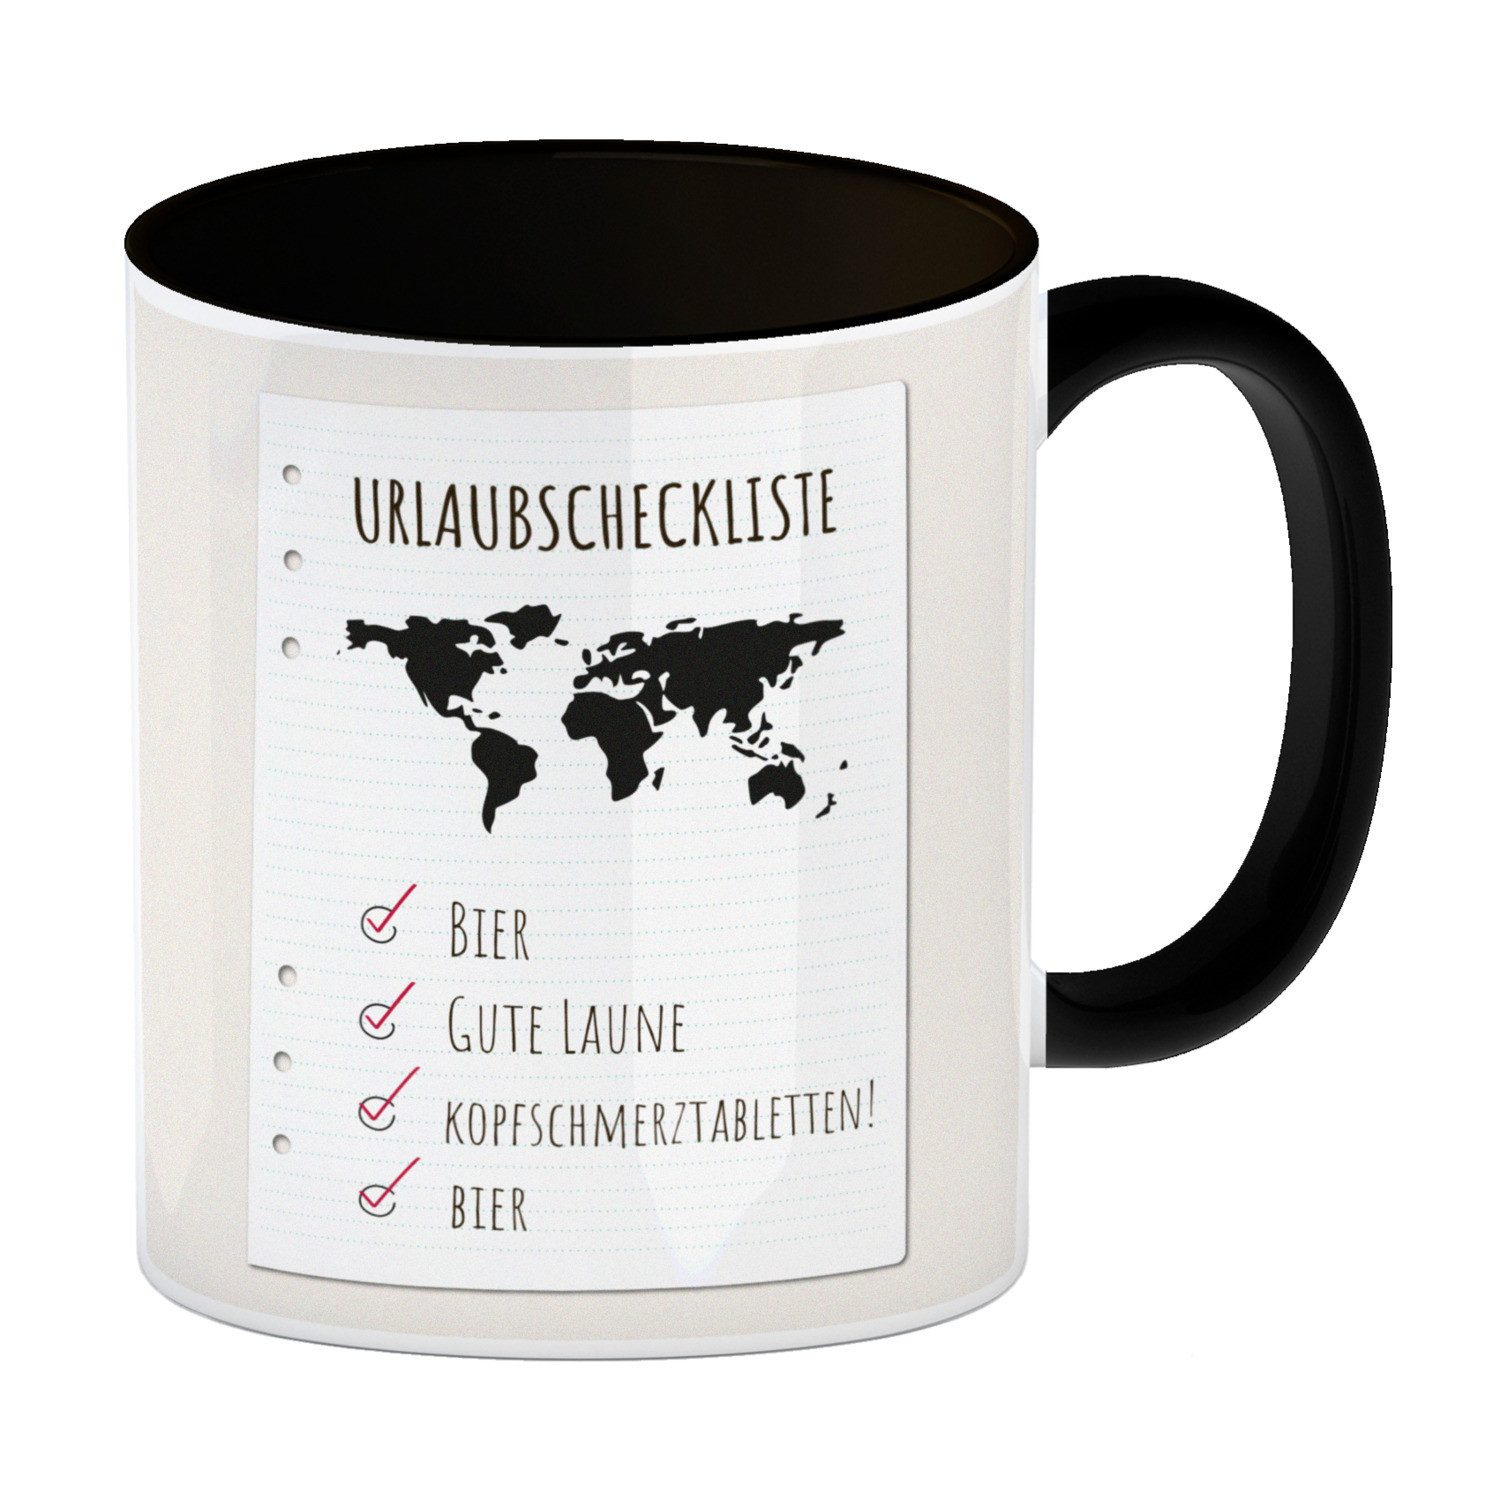 speecheese Tasse Kaffeebecher Schwarz Urlaubscheckliste für Partyurlaub mit Weltkarte